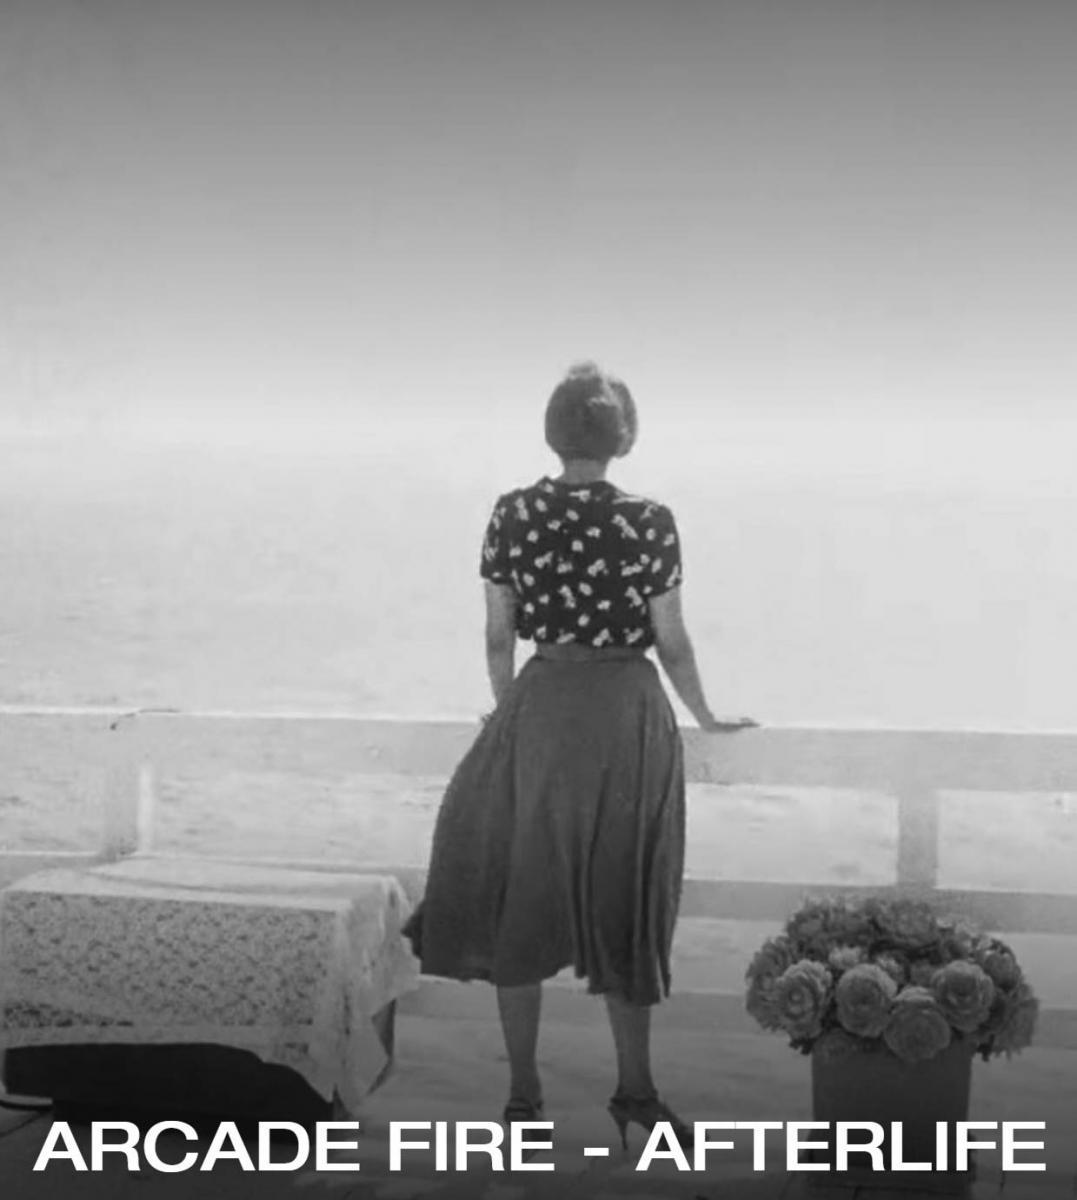 Arcade Fire premiere studio version of 'Afterlife' - listen